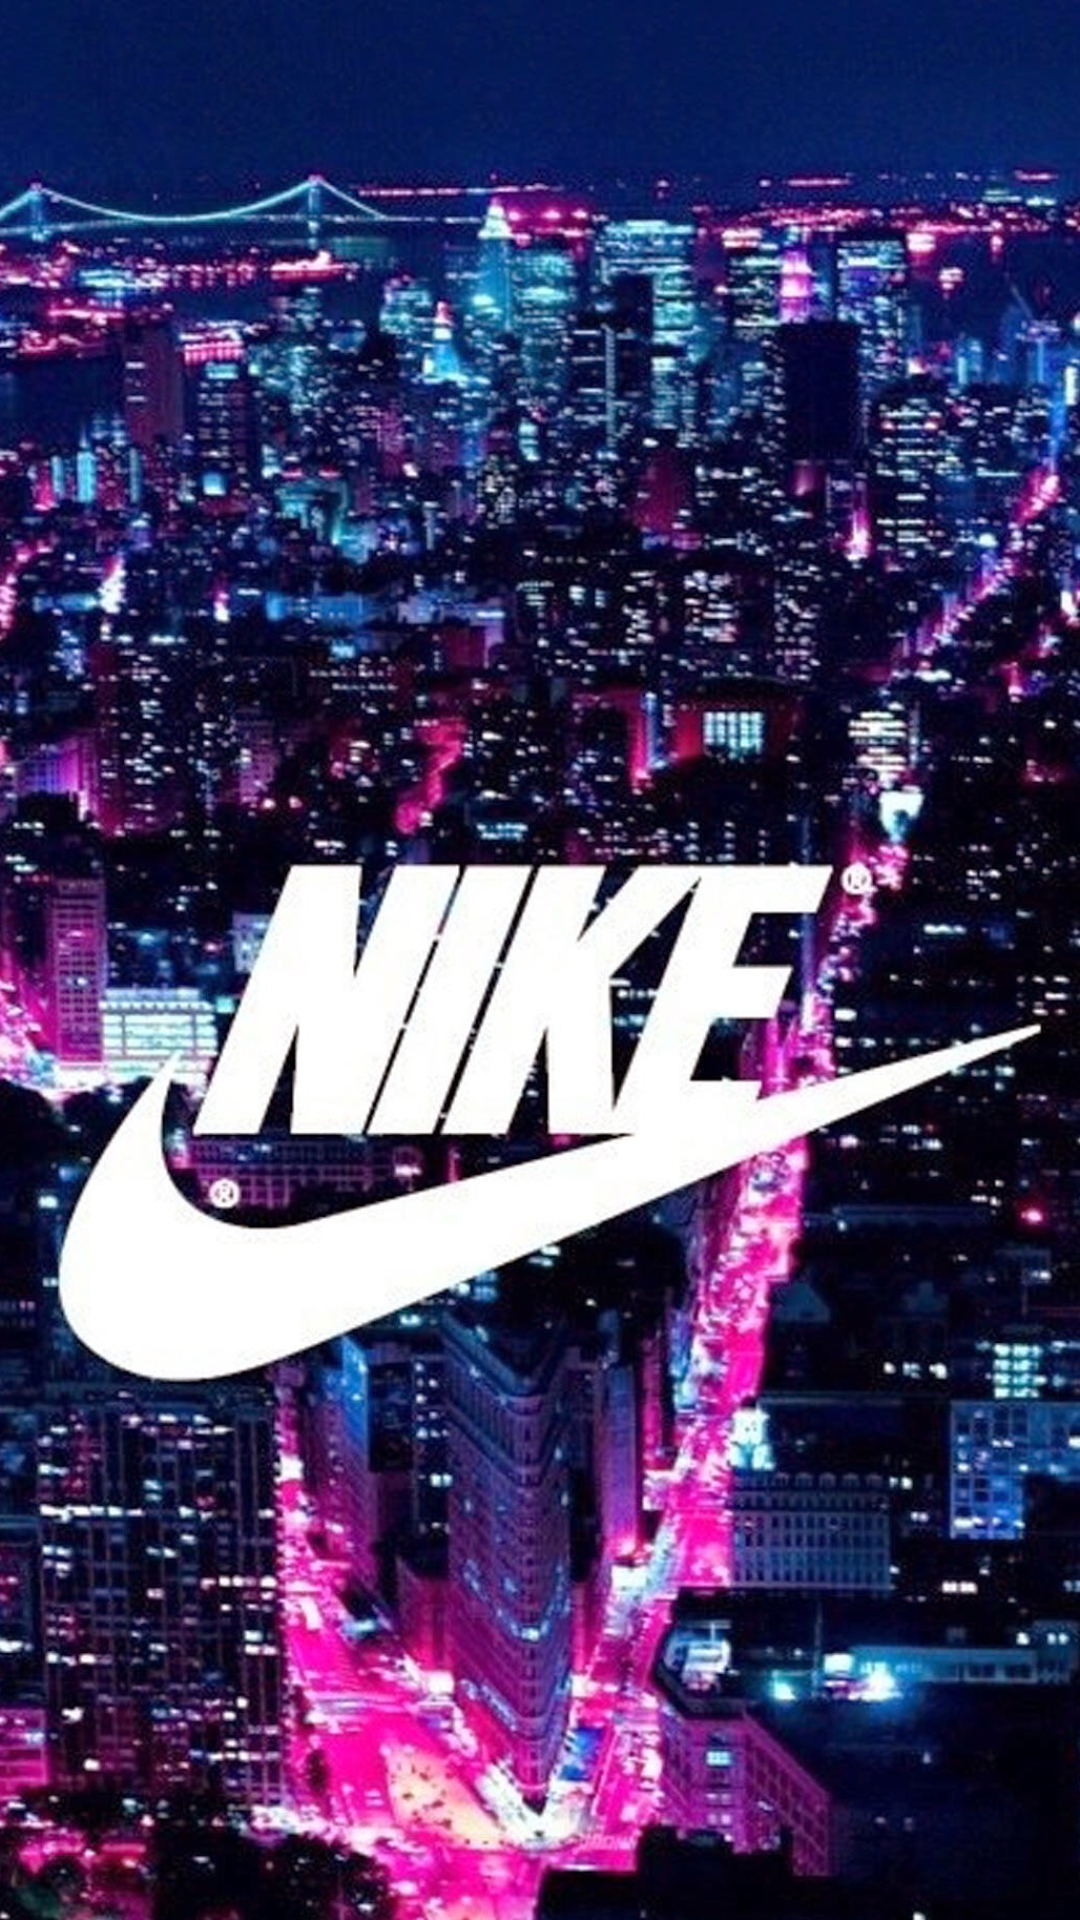 Pink Nike Logo Wallpaper